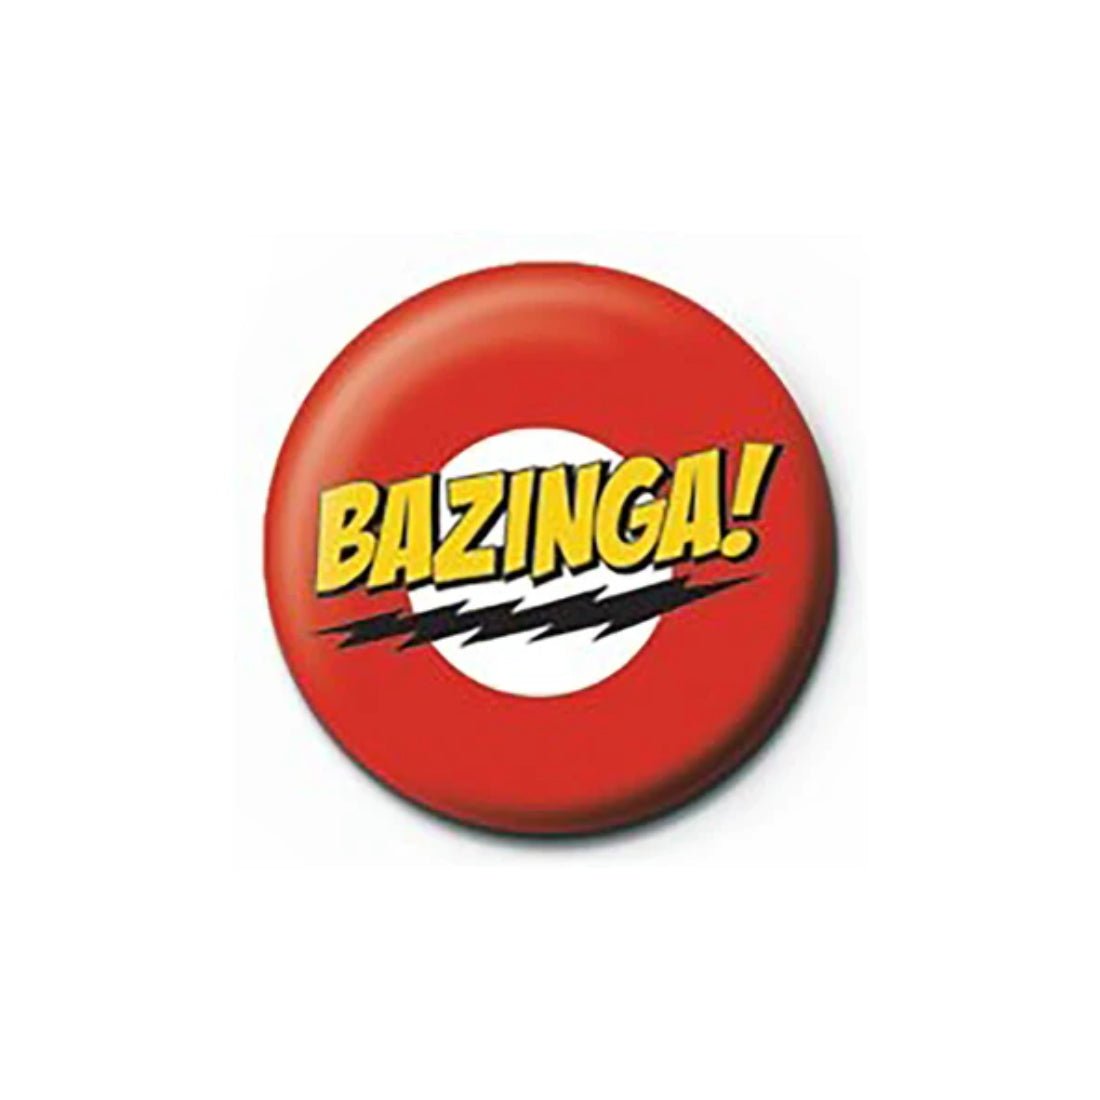 The Big Bang Theory - Bazinga Button Badge - أكسسوار - Store 974 | ستور ٩٧٤